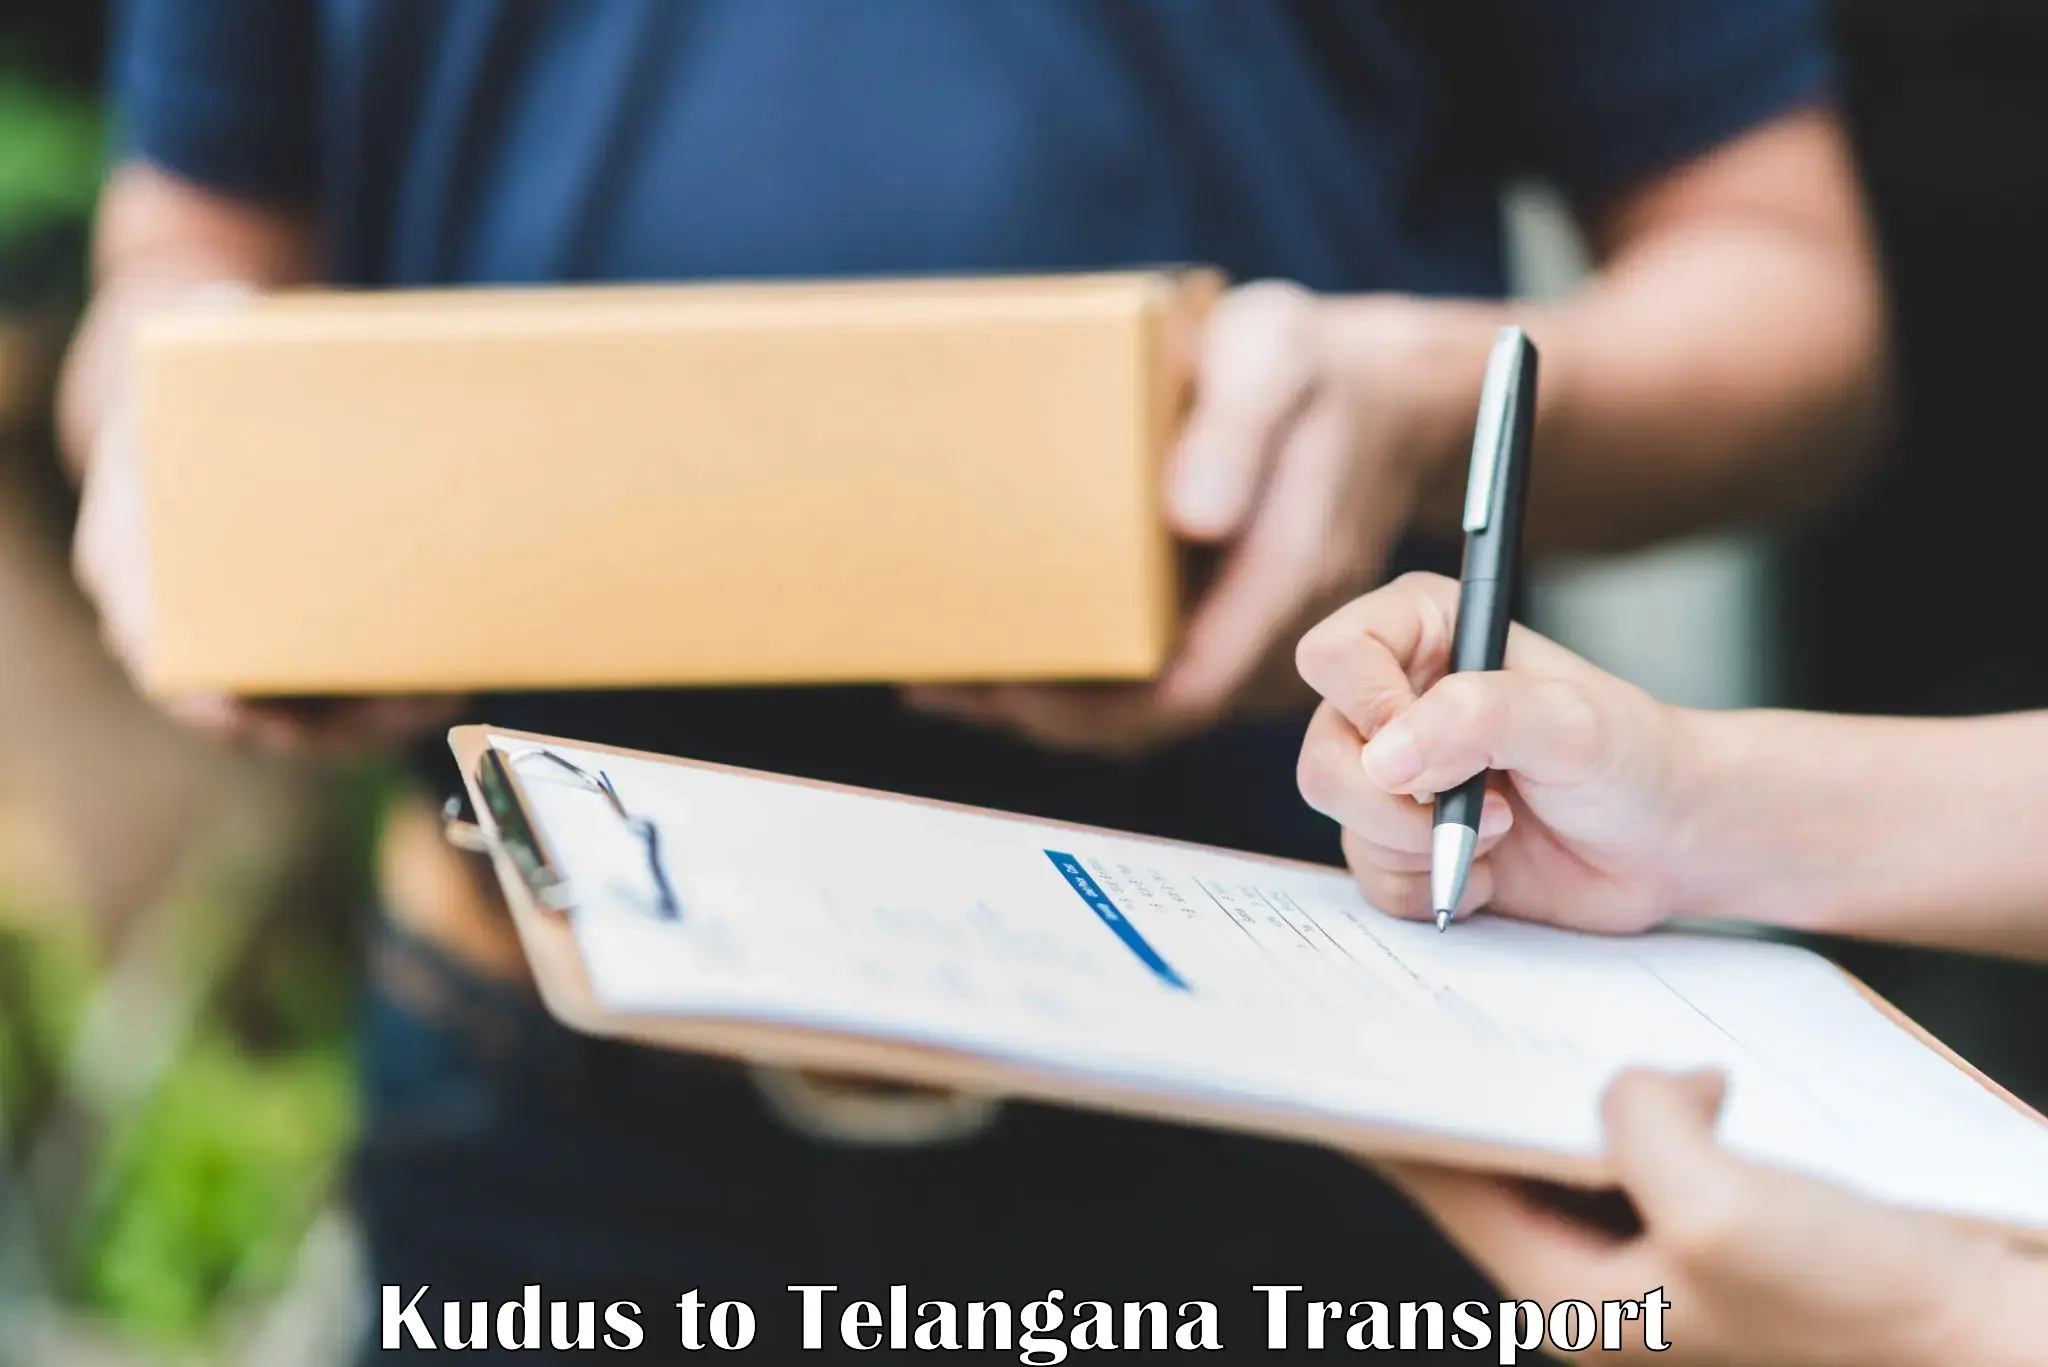 Transport in sharing Kudus to Ichoda